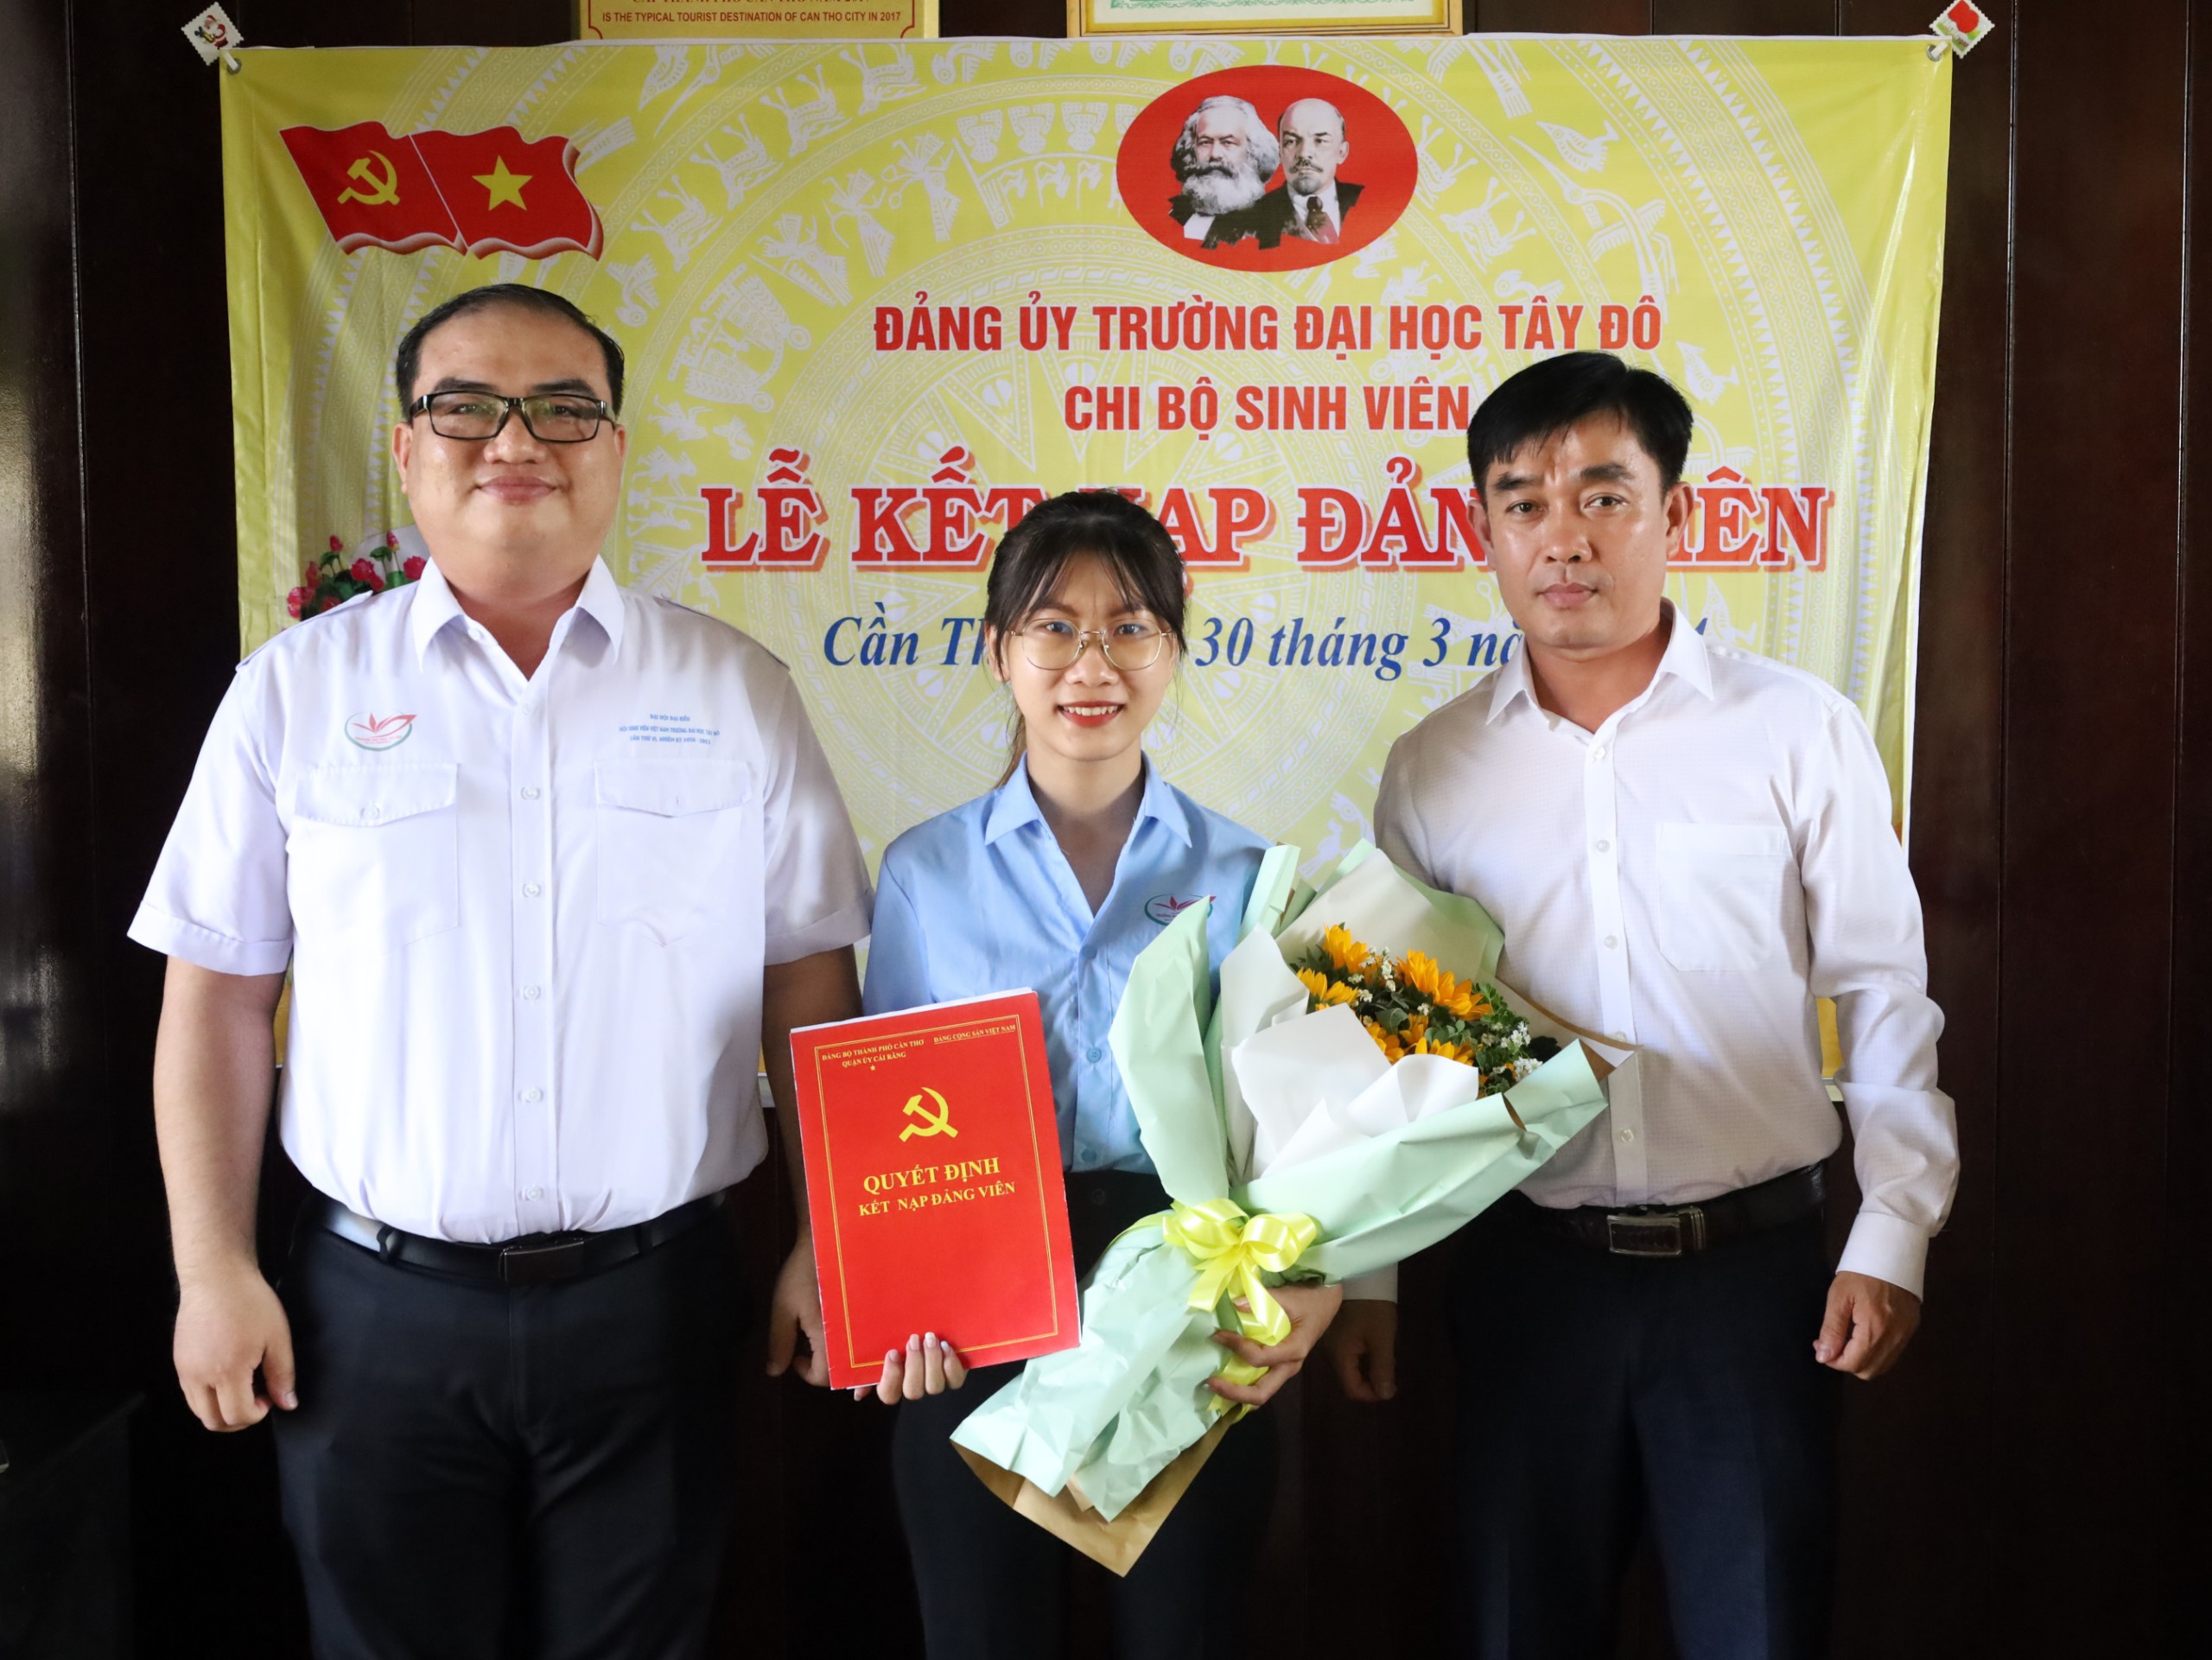 Thực hiện kết nạp Đảng cho quần chúng Nguyễn Thị Tố Trinh - Sinh viên Trường Đại học Tây Đô “Sinh viên 5 tốt” cấp Thành phố.